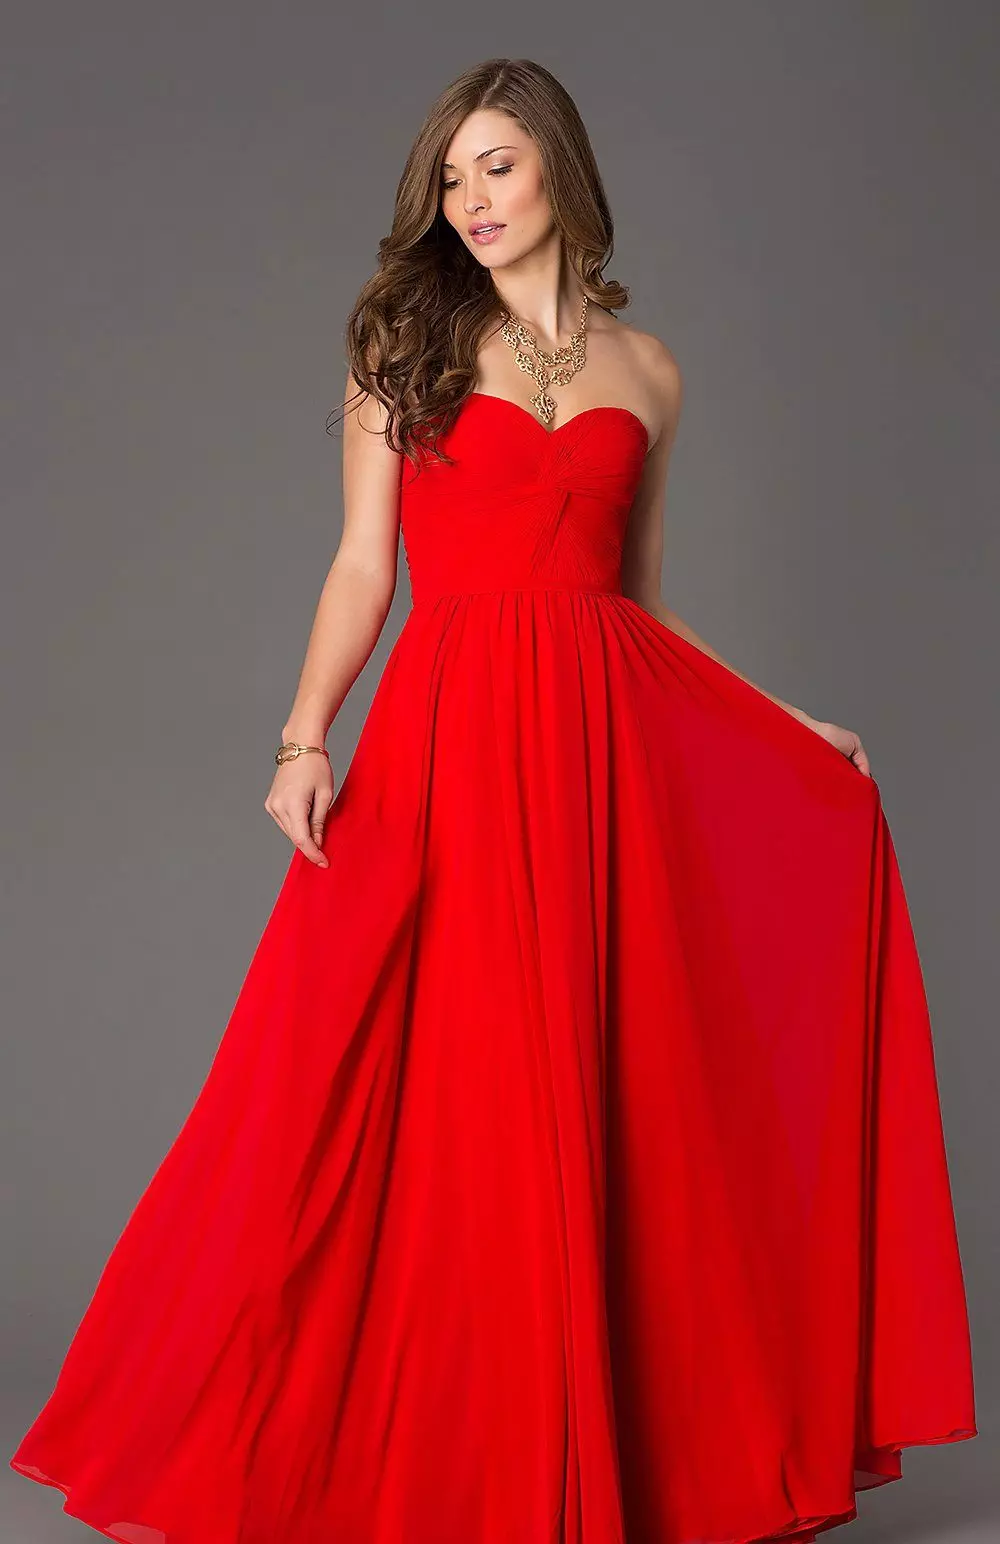 Belo vestido vermelho longo com espartilho